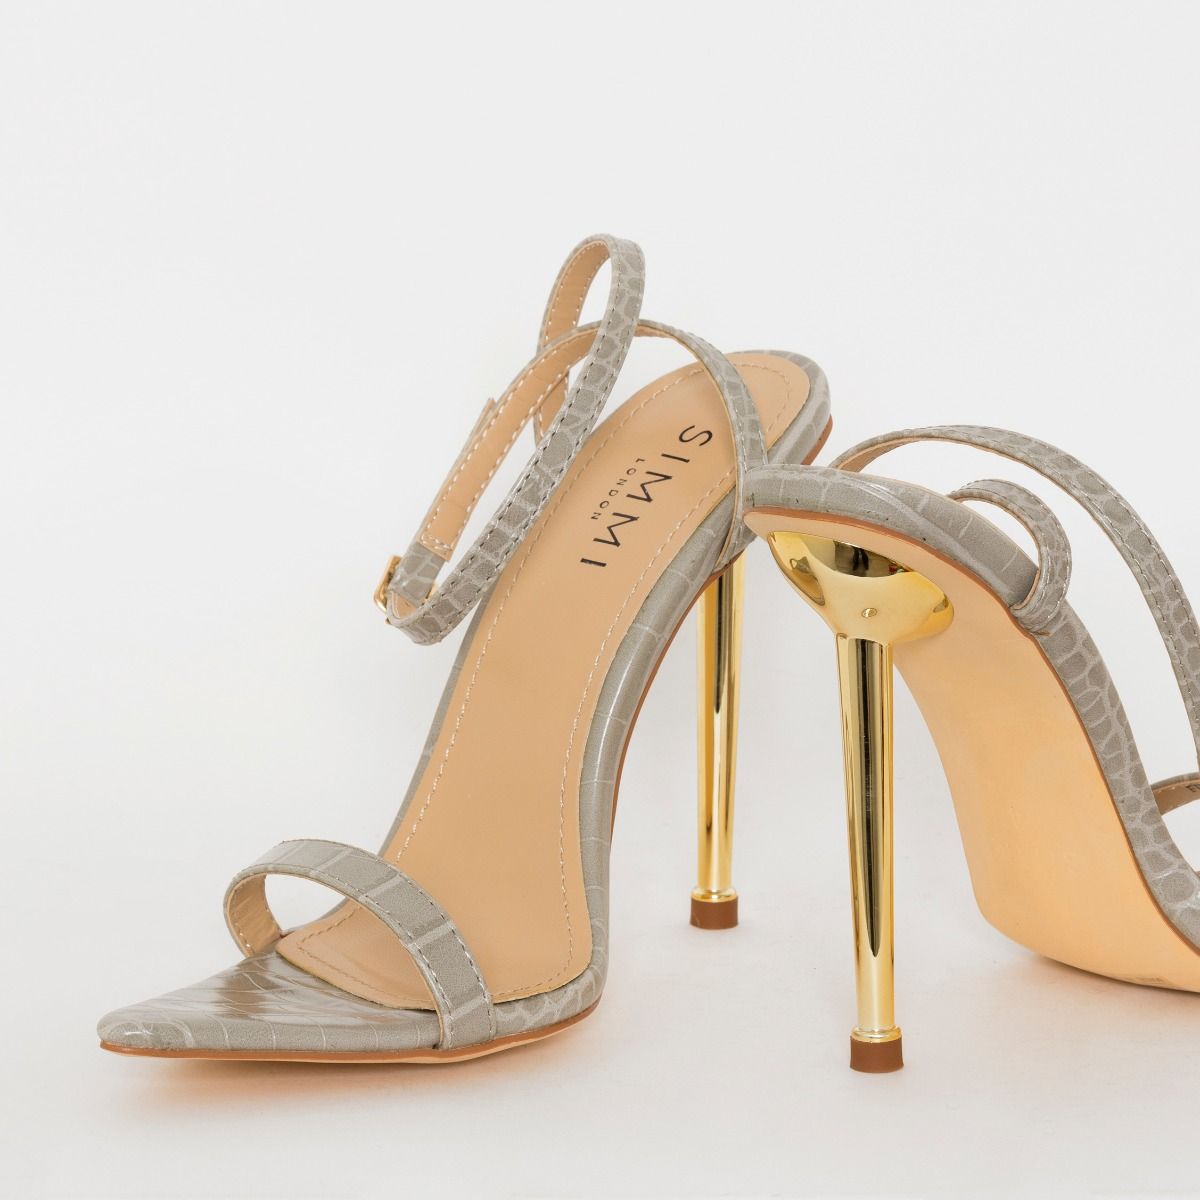 Buy > grey stiletto heels > in stock